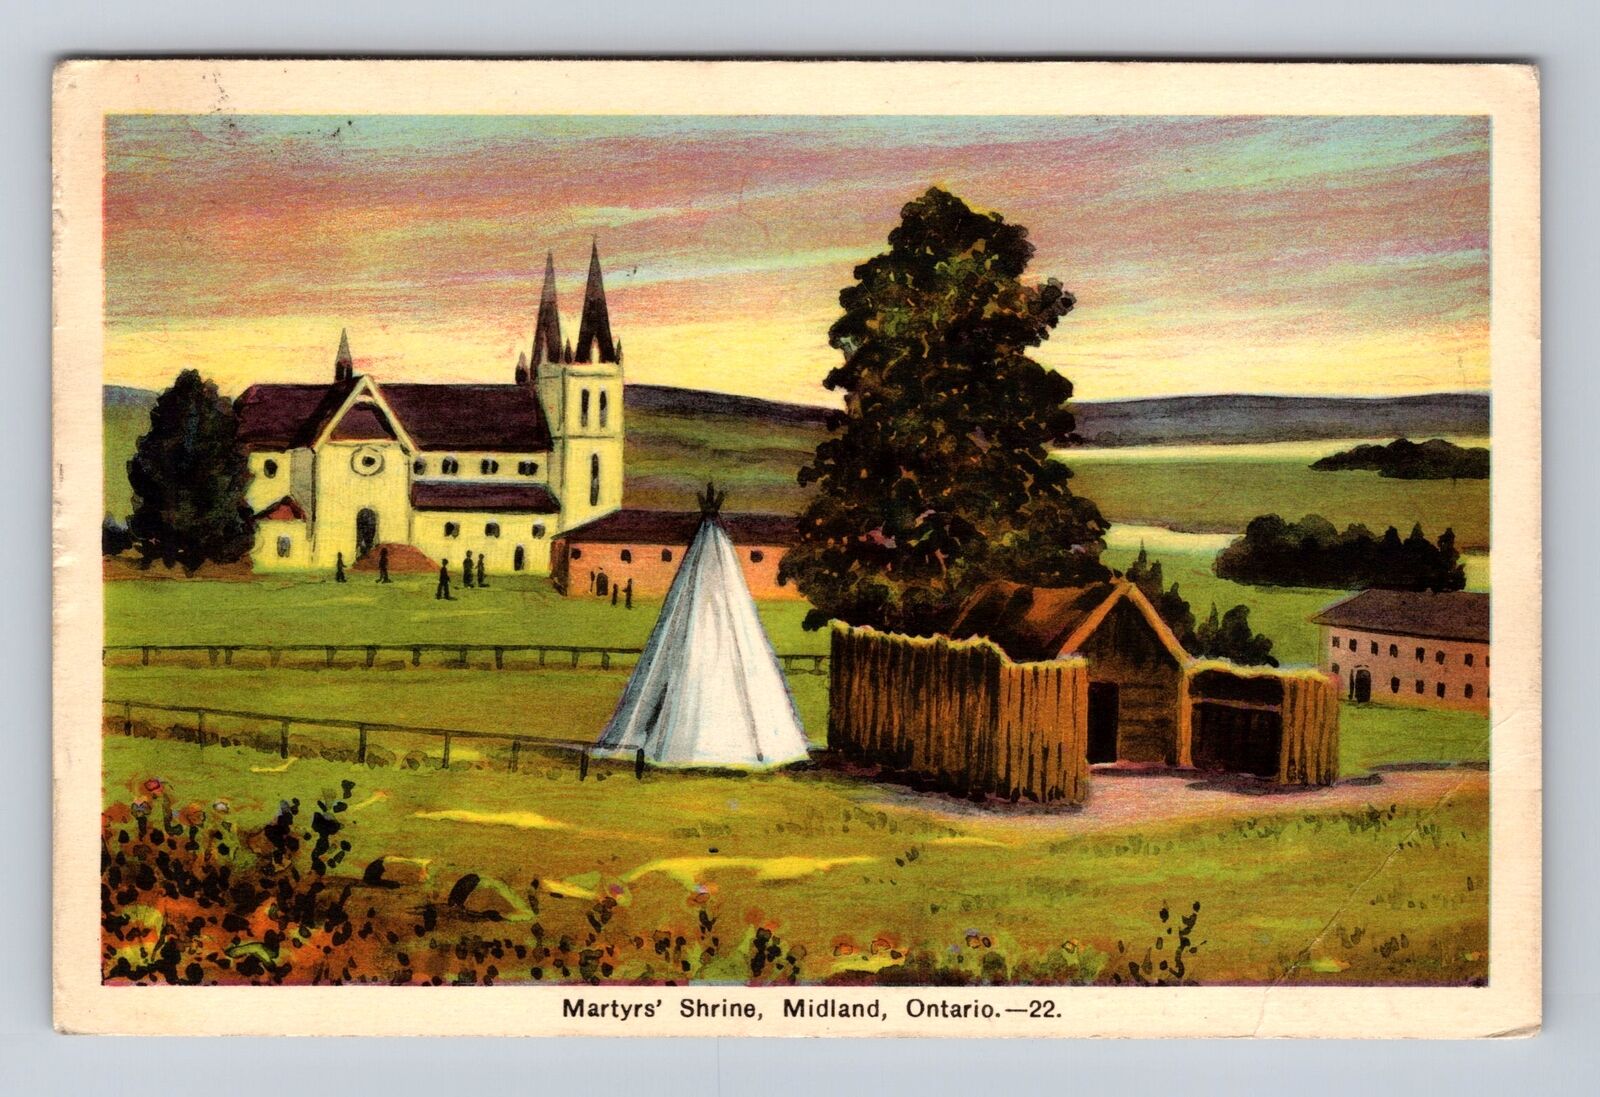 Midland Ontario-Canada, Martyrs' Shrine, Antique Vintage Souvenir Postcard